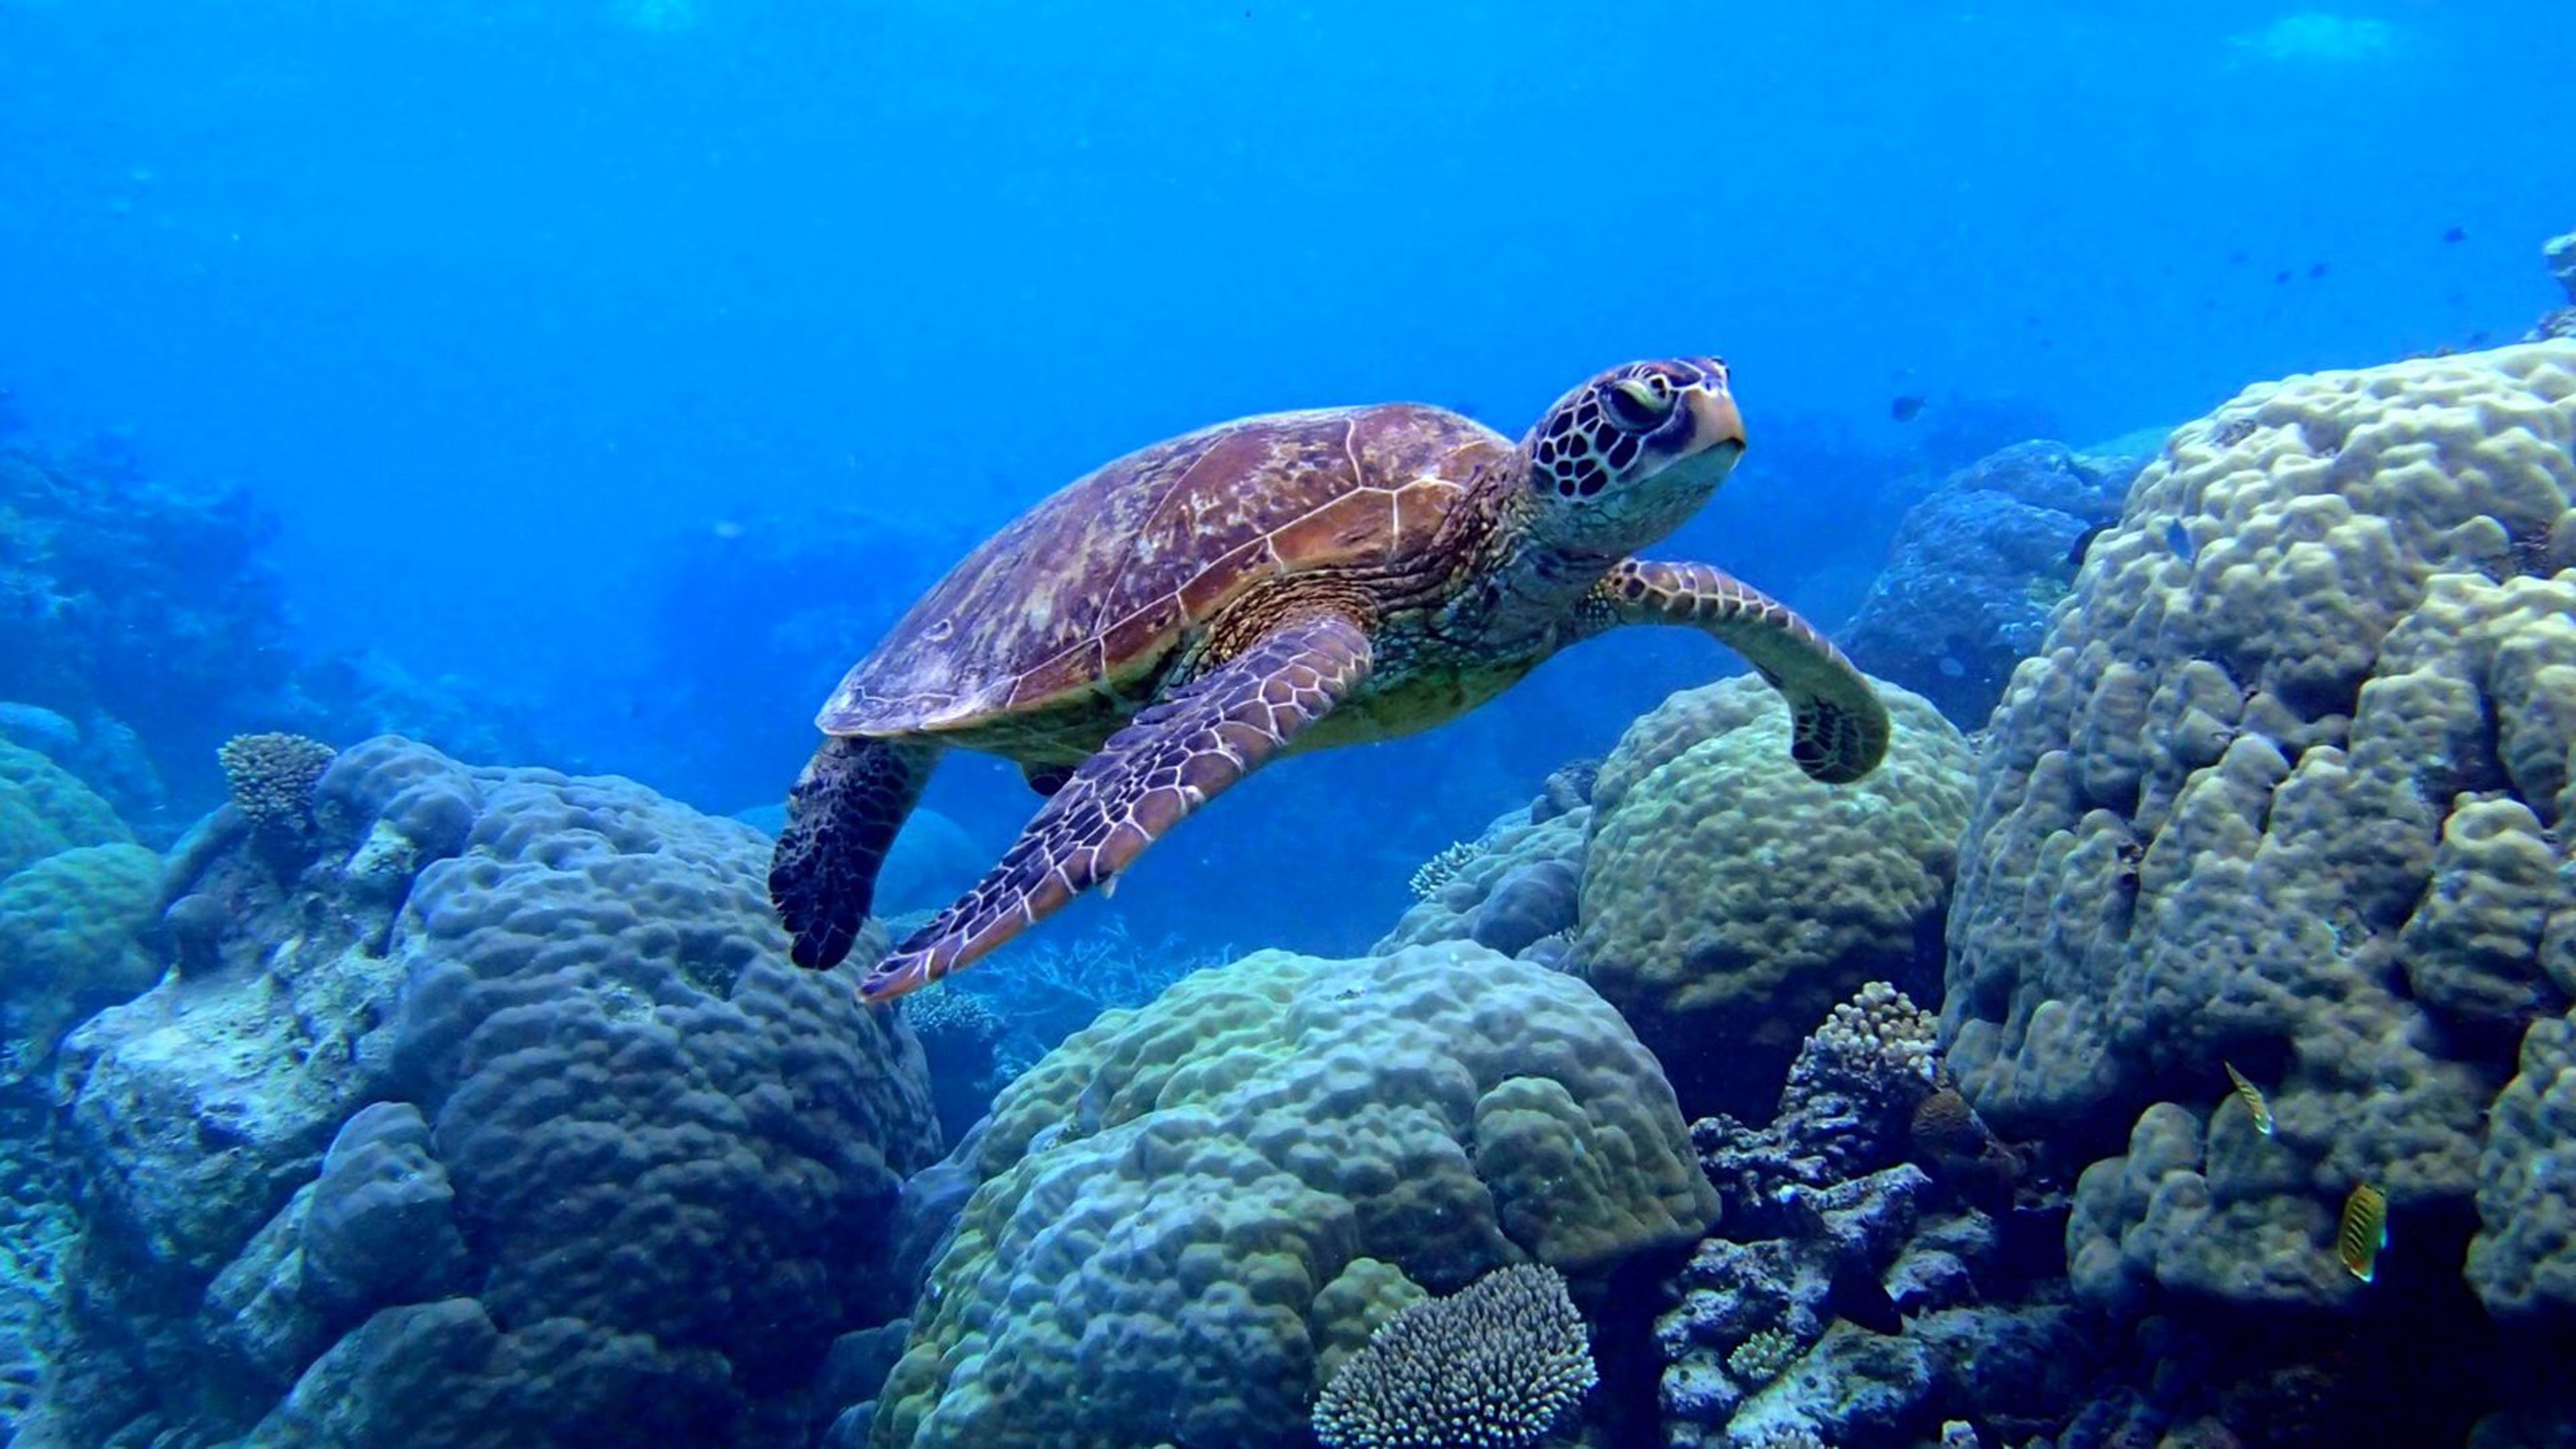 Морские обитатели морская черепаха. Морская черепаха бисса. Черепаха бисса (Каретта). Морская черепаха индийского океана. Нектон черепахи.